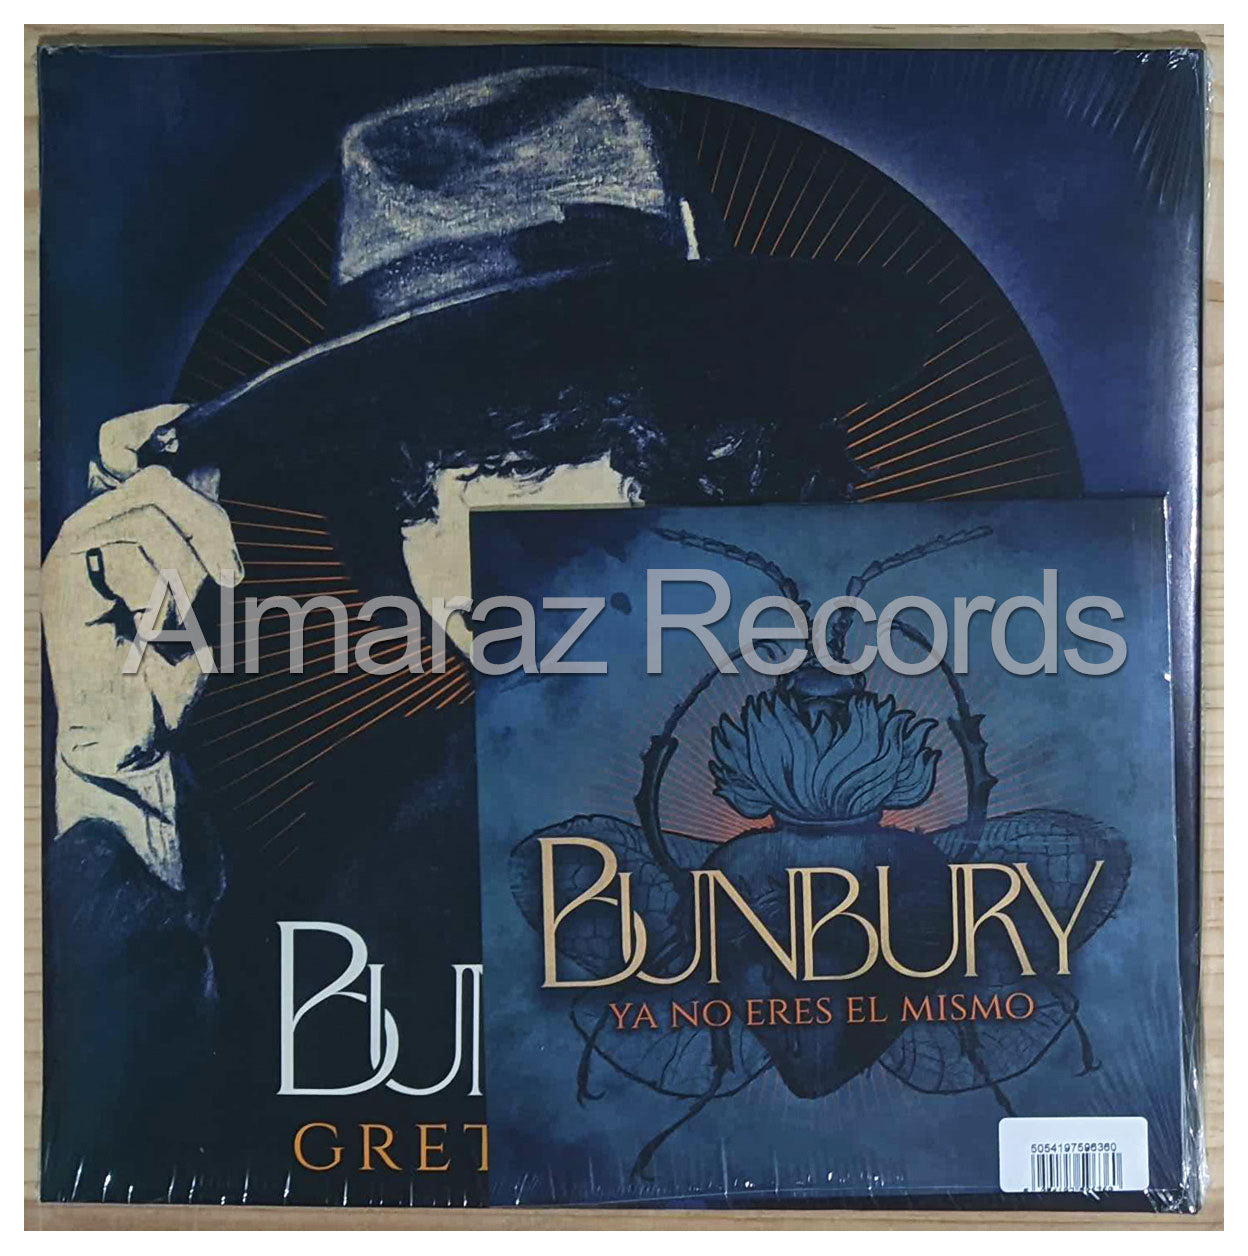 Enrique Bunbury Greta Garbo Clear Vinyl Lp + Single 7-inch